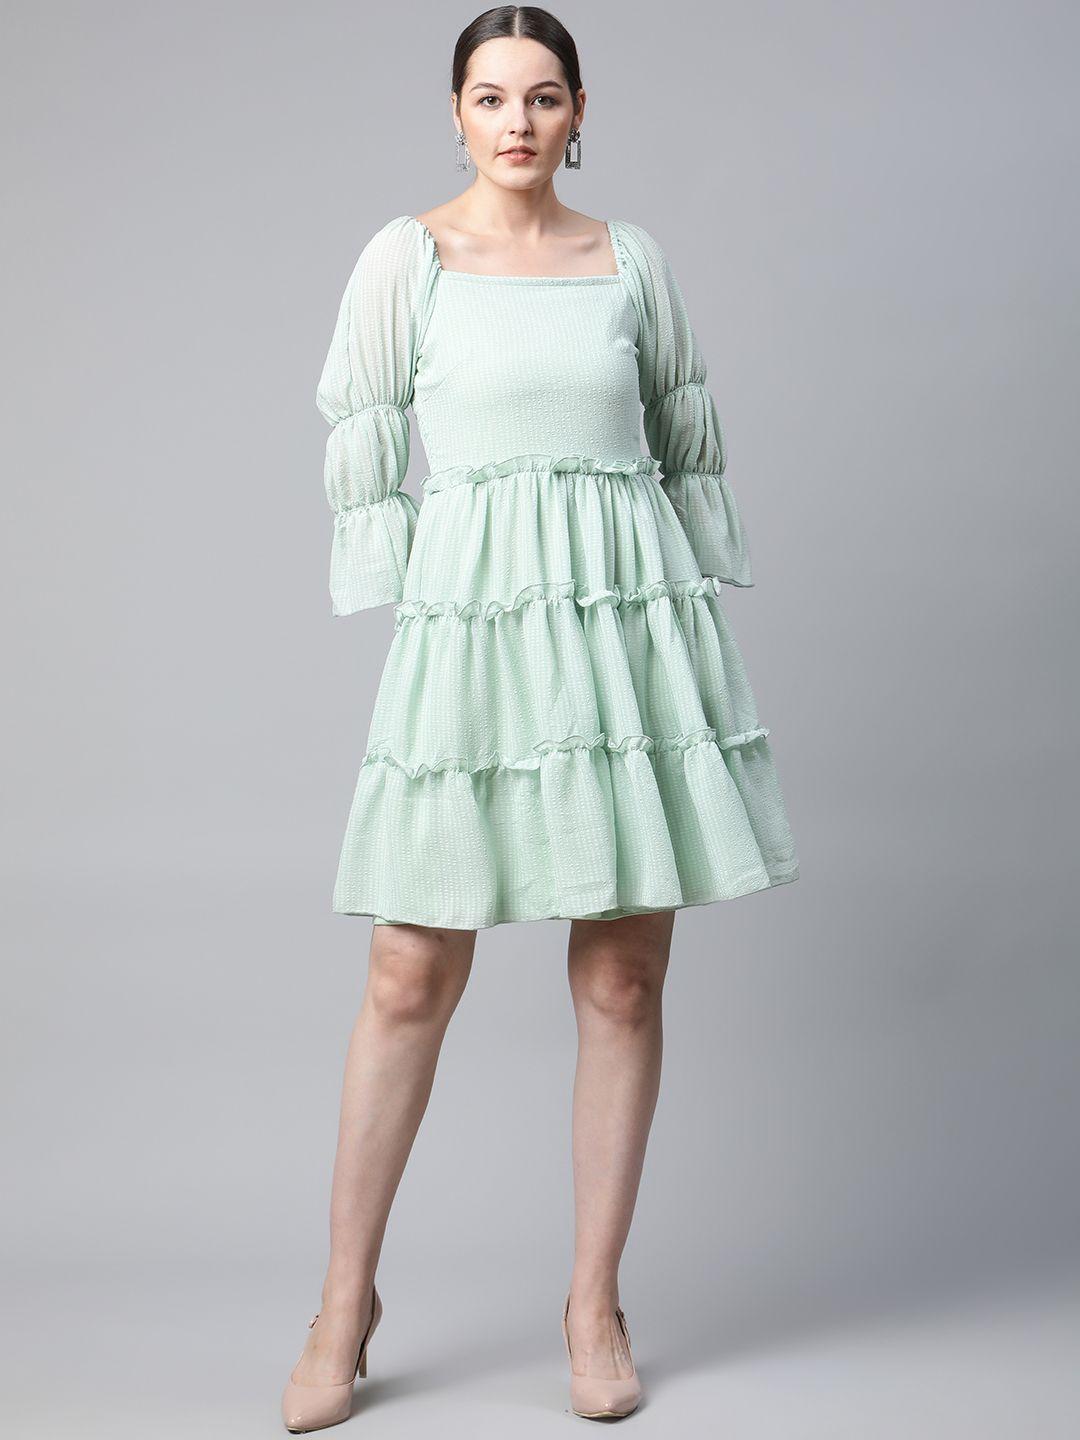 pluss mint green self design bell sleeves a-line tiered dress